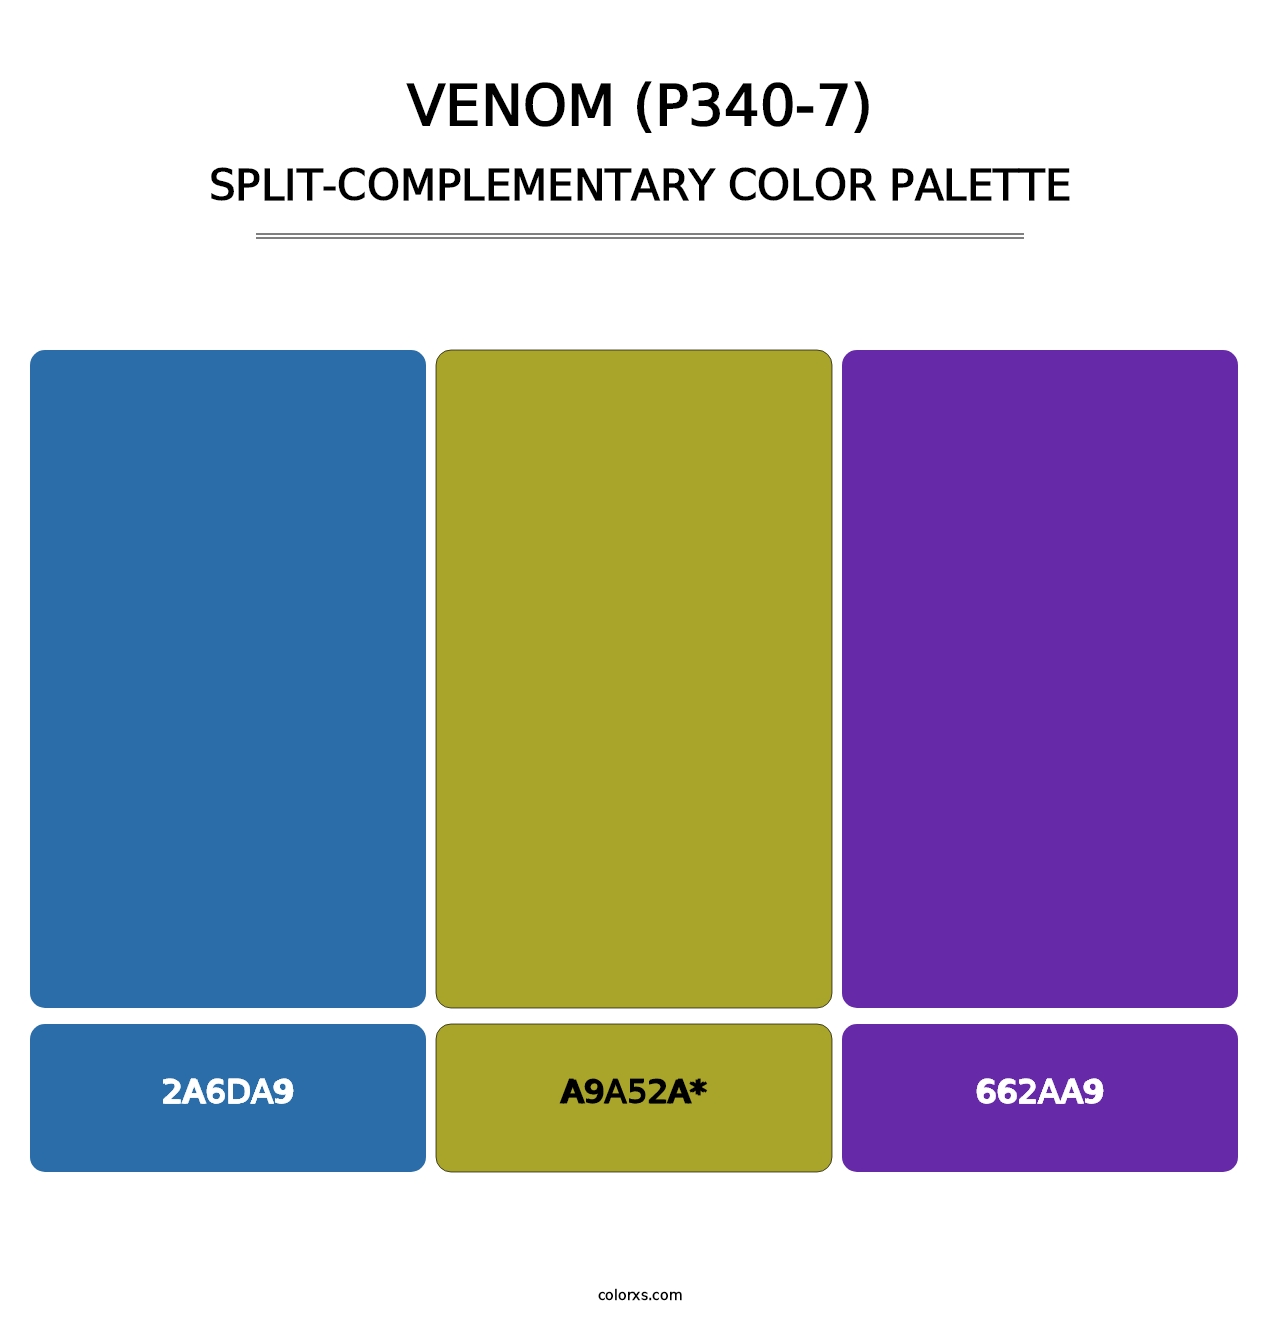 Venom (P340-7) - Split-Complementary Color Palette